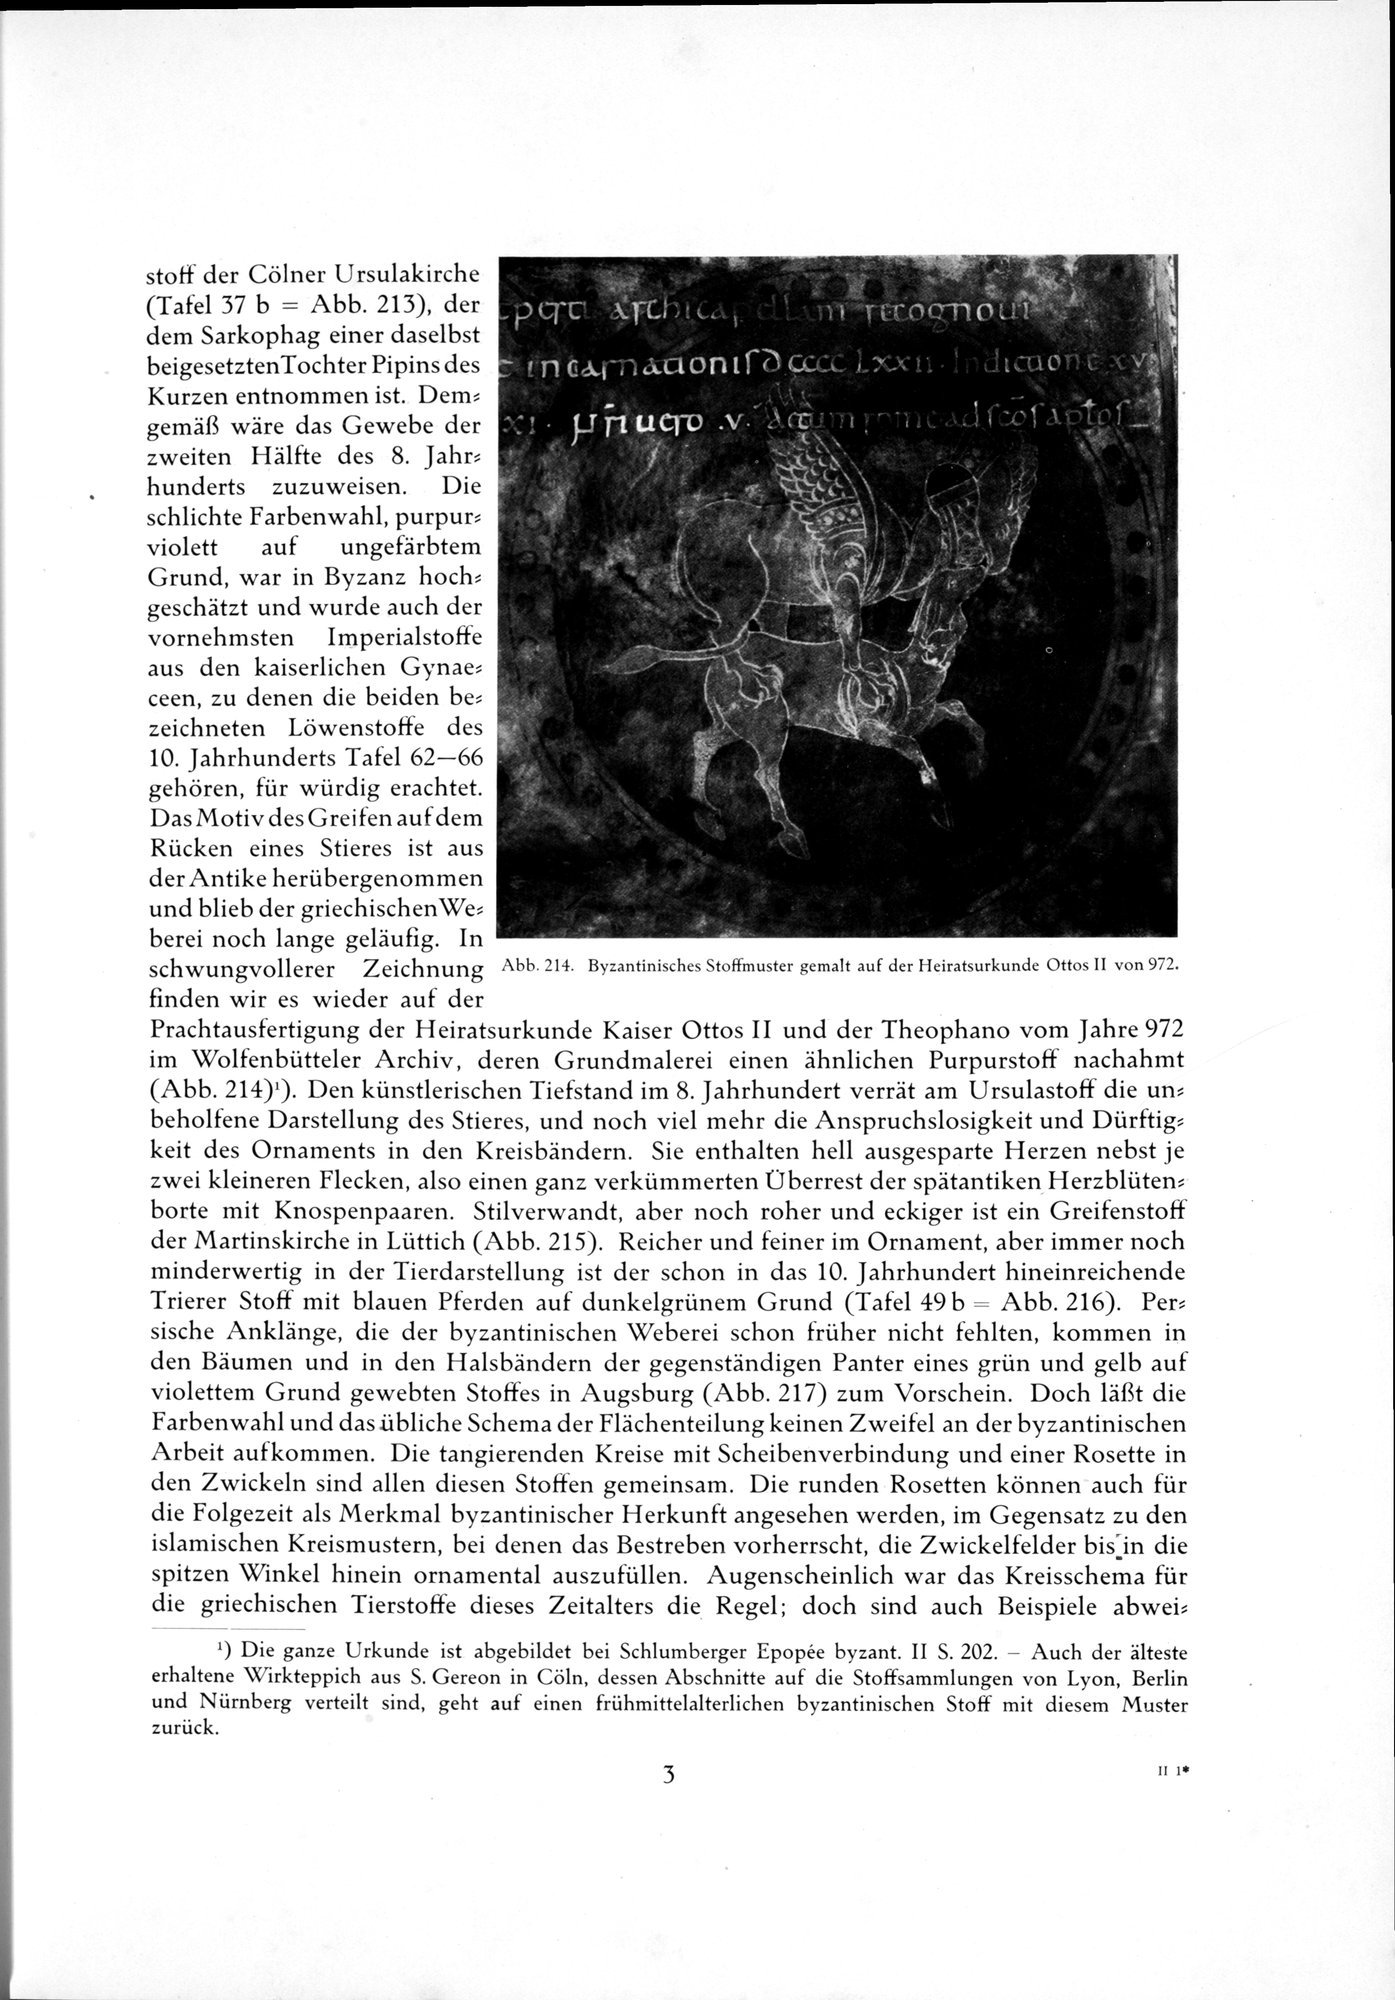 Kunstgeschichte der Seidenweberei : vol.2 / Page 15 (Grayscale High Resolution Image)